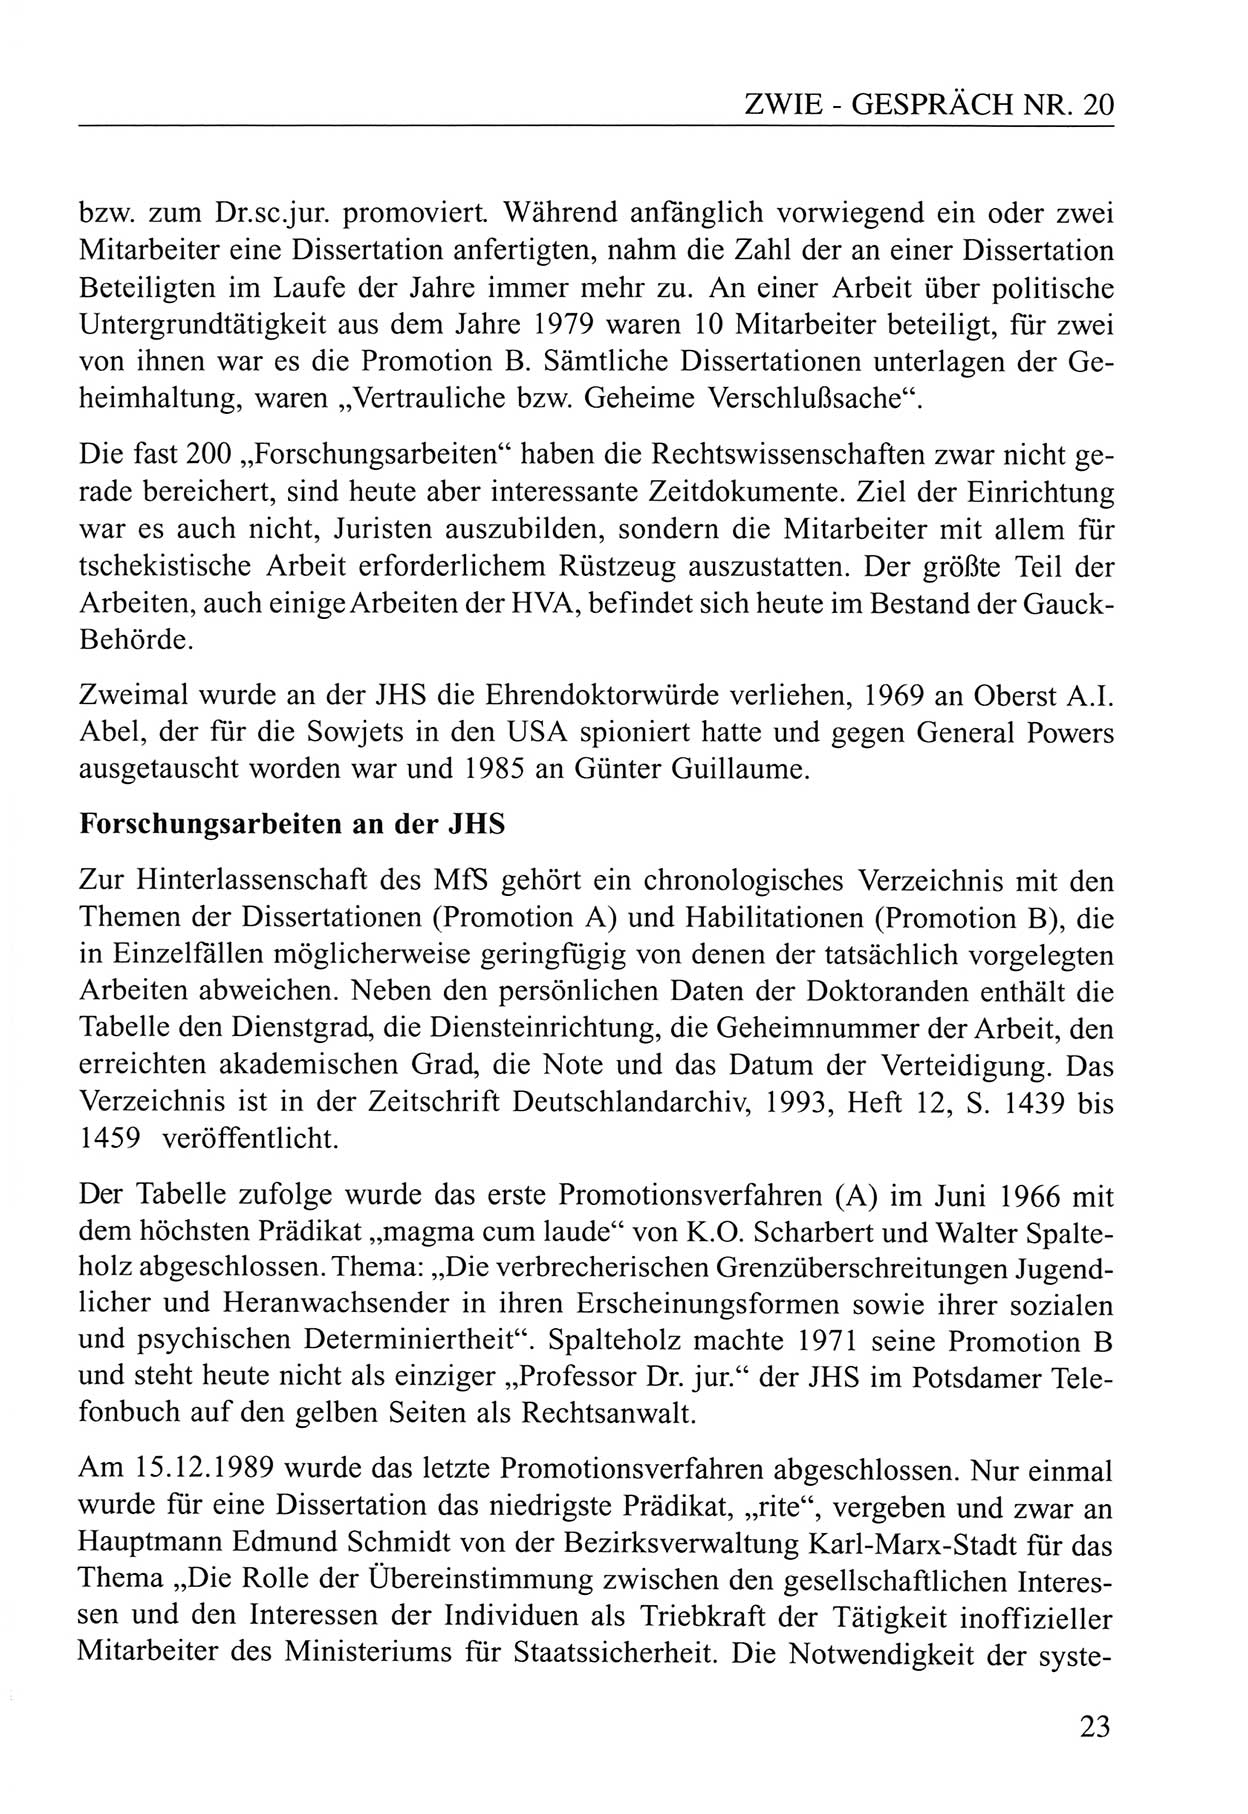 Zwie-GesprÃ¤ch, BeitrÃ¤ge zum Umgang mit der Staatssicherheits-Vergangenheit [Deutsche Demokratische Republik (DDR)], Ausgabe Nr. 20, Berlin 1994, Seite 23 (Zwie-Gespr. Ausg. 20 1994, S. 23)